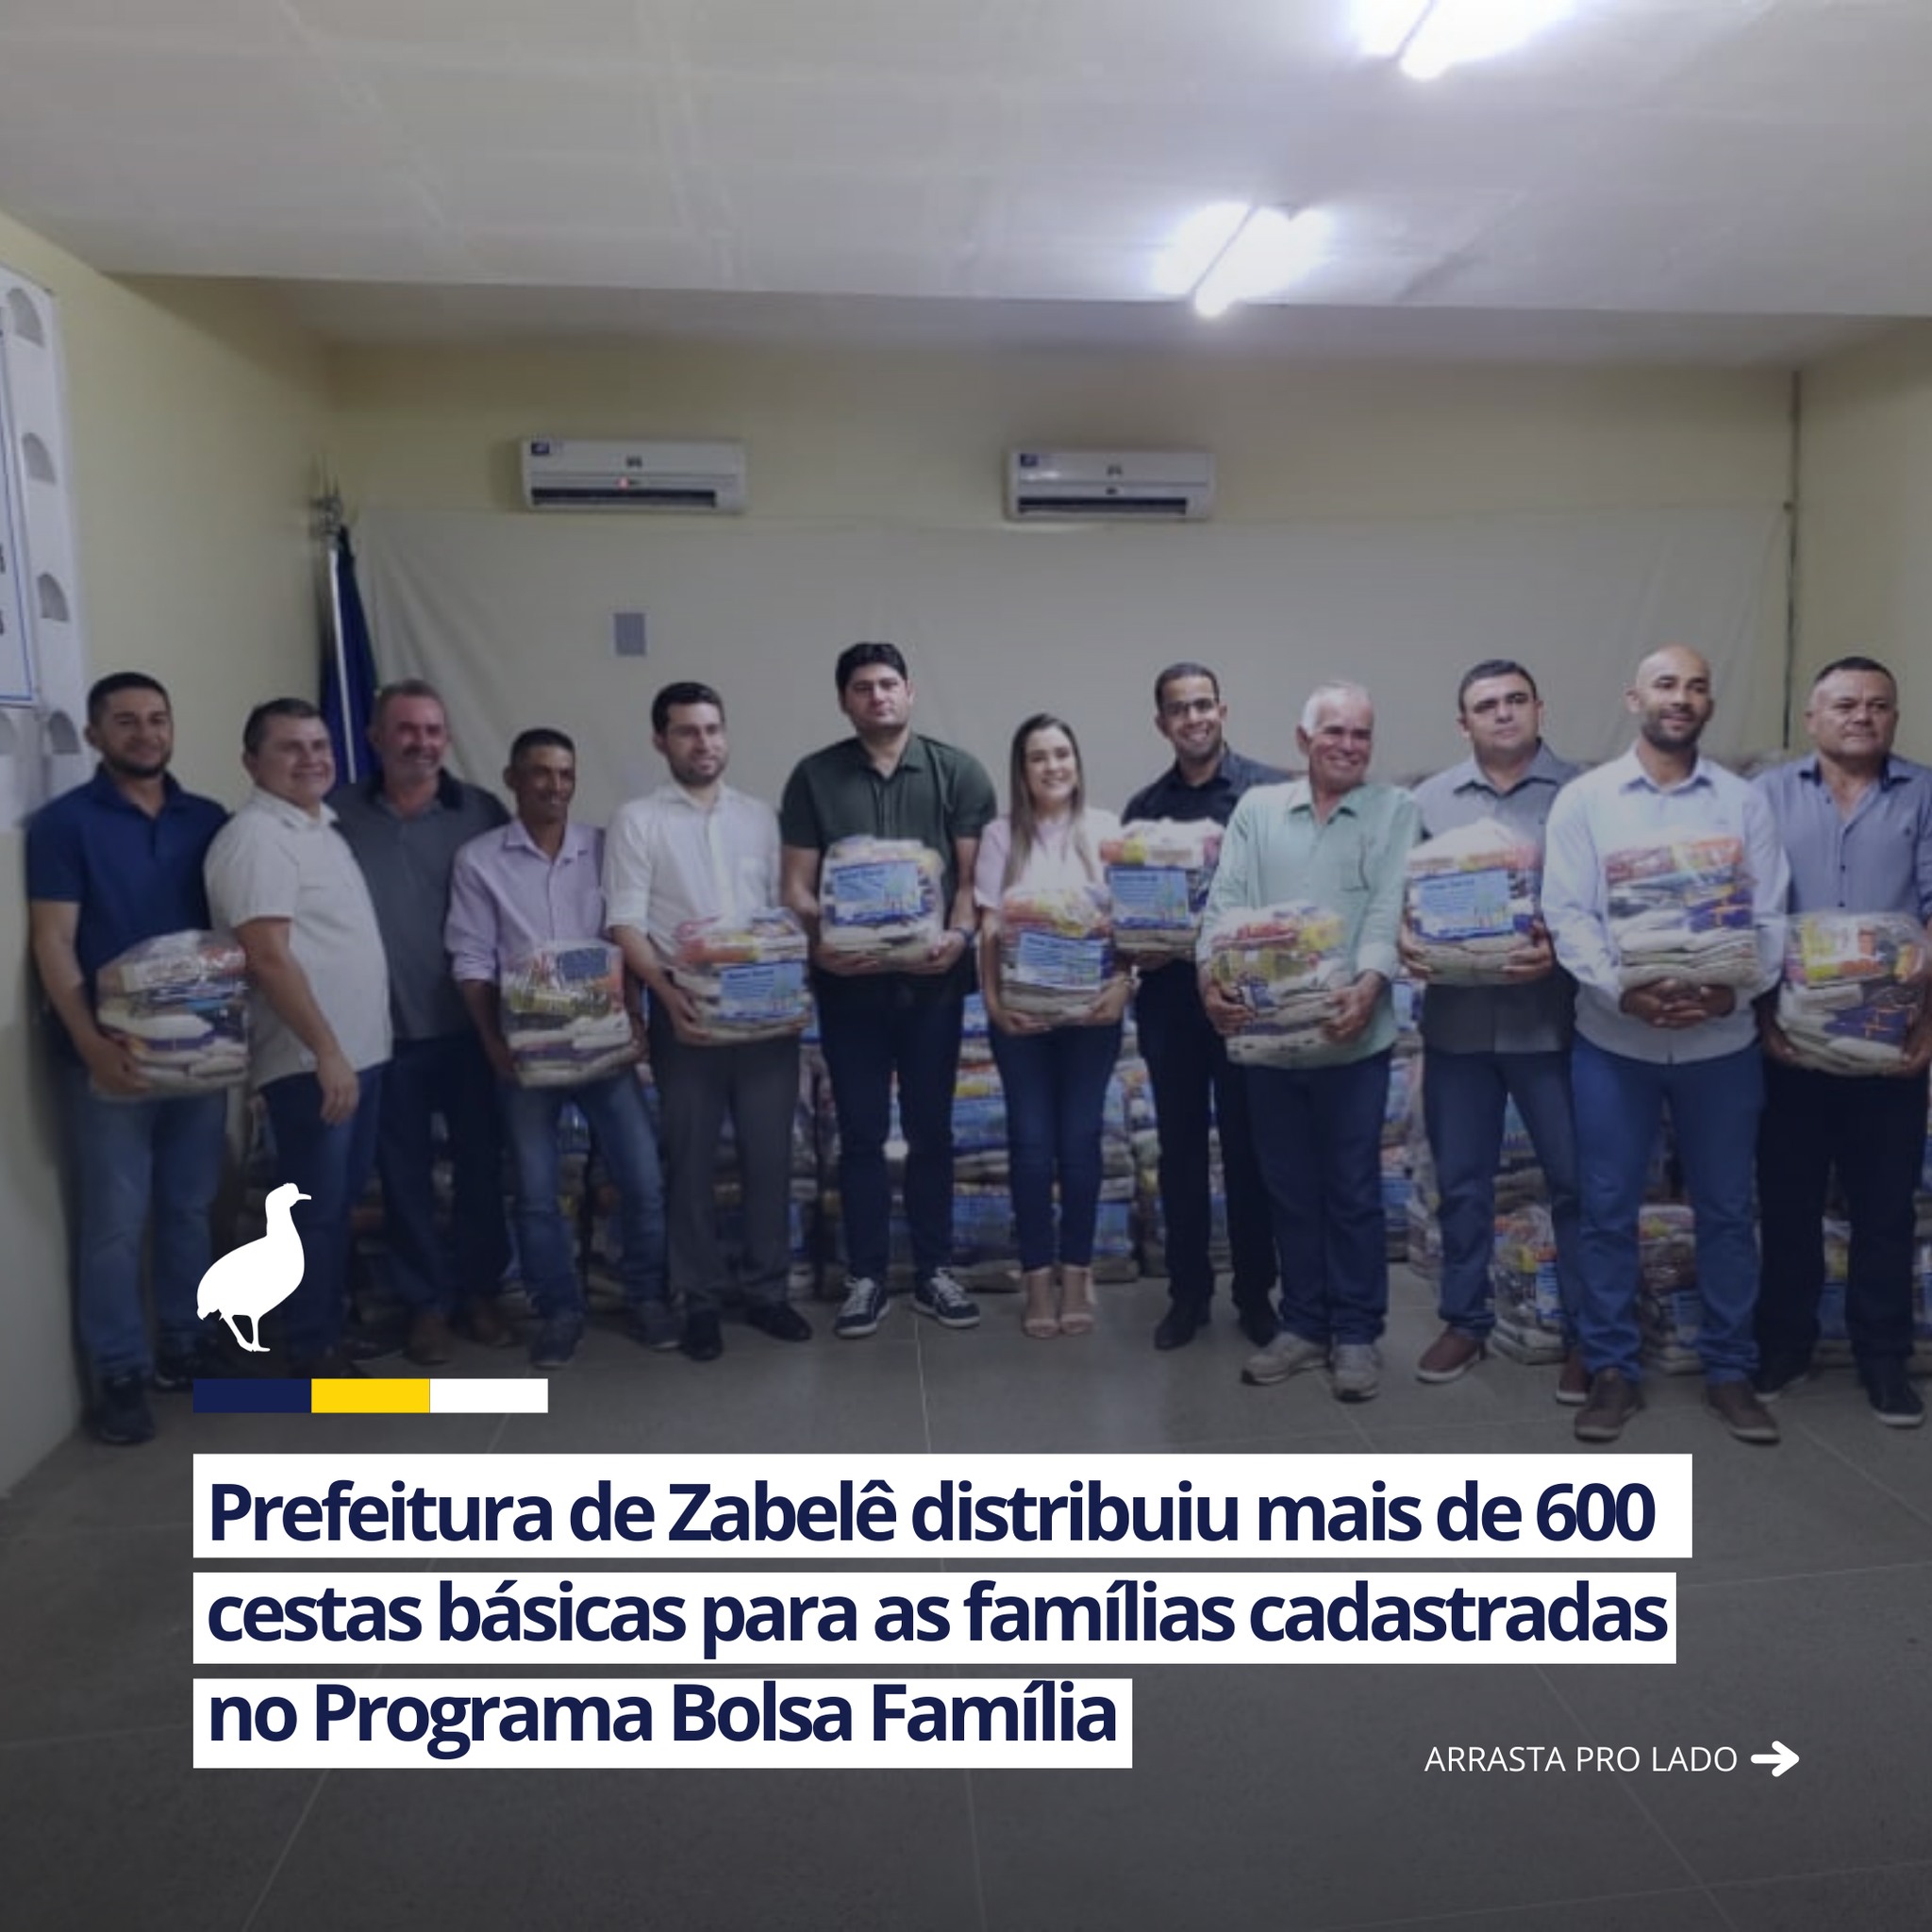 270000683_2126334744195459_4783279745122868887_n Prefeitura de Zabelê distribui mais de 600 cestas básicas para os beneficiários do Programa Bolsa Família